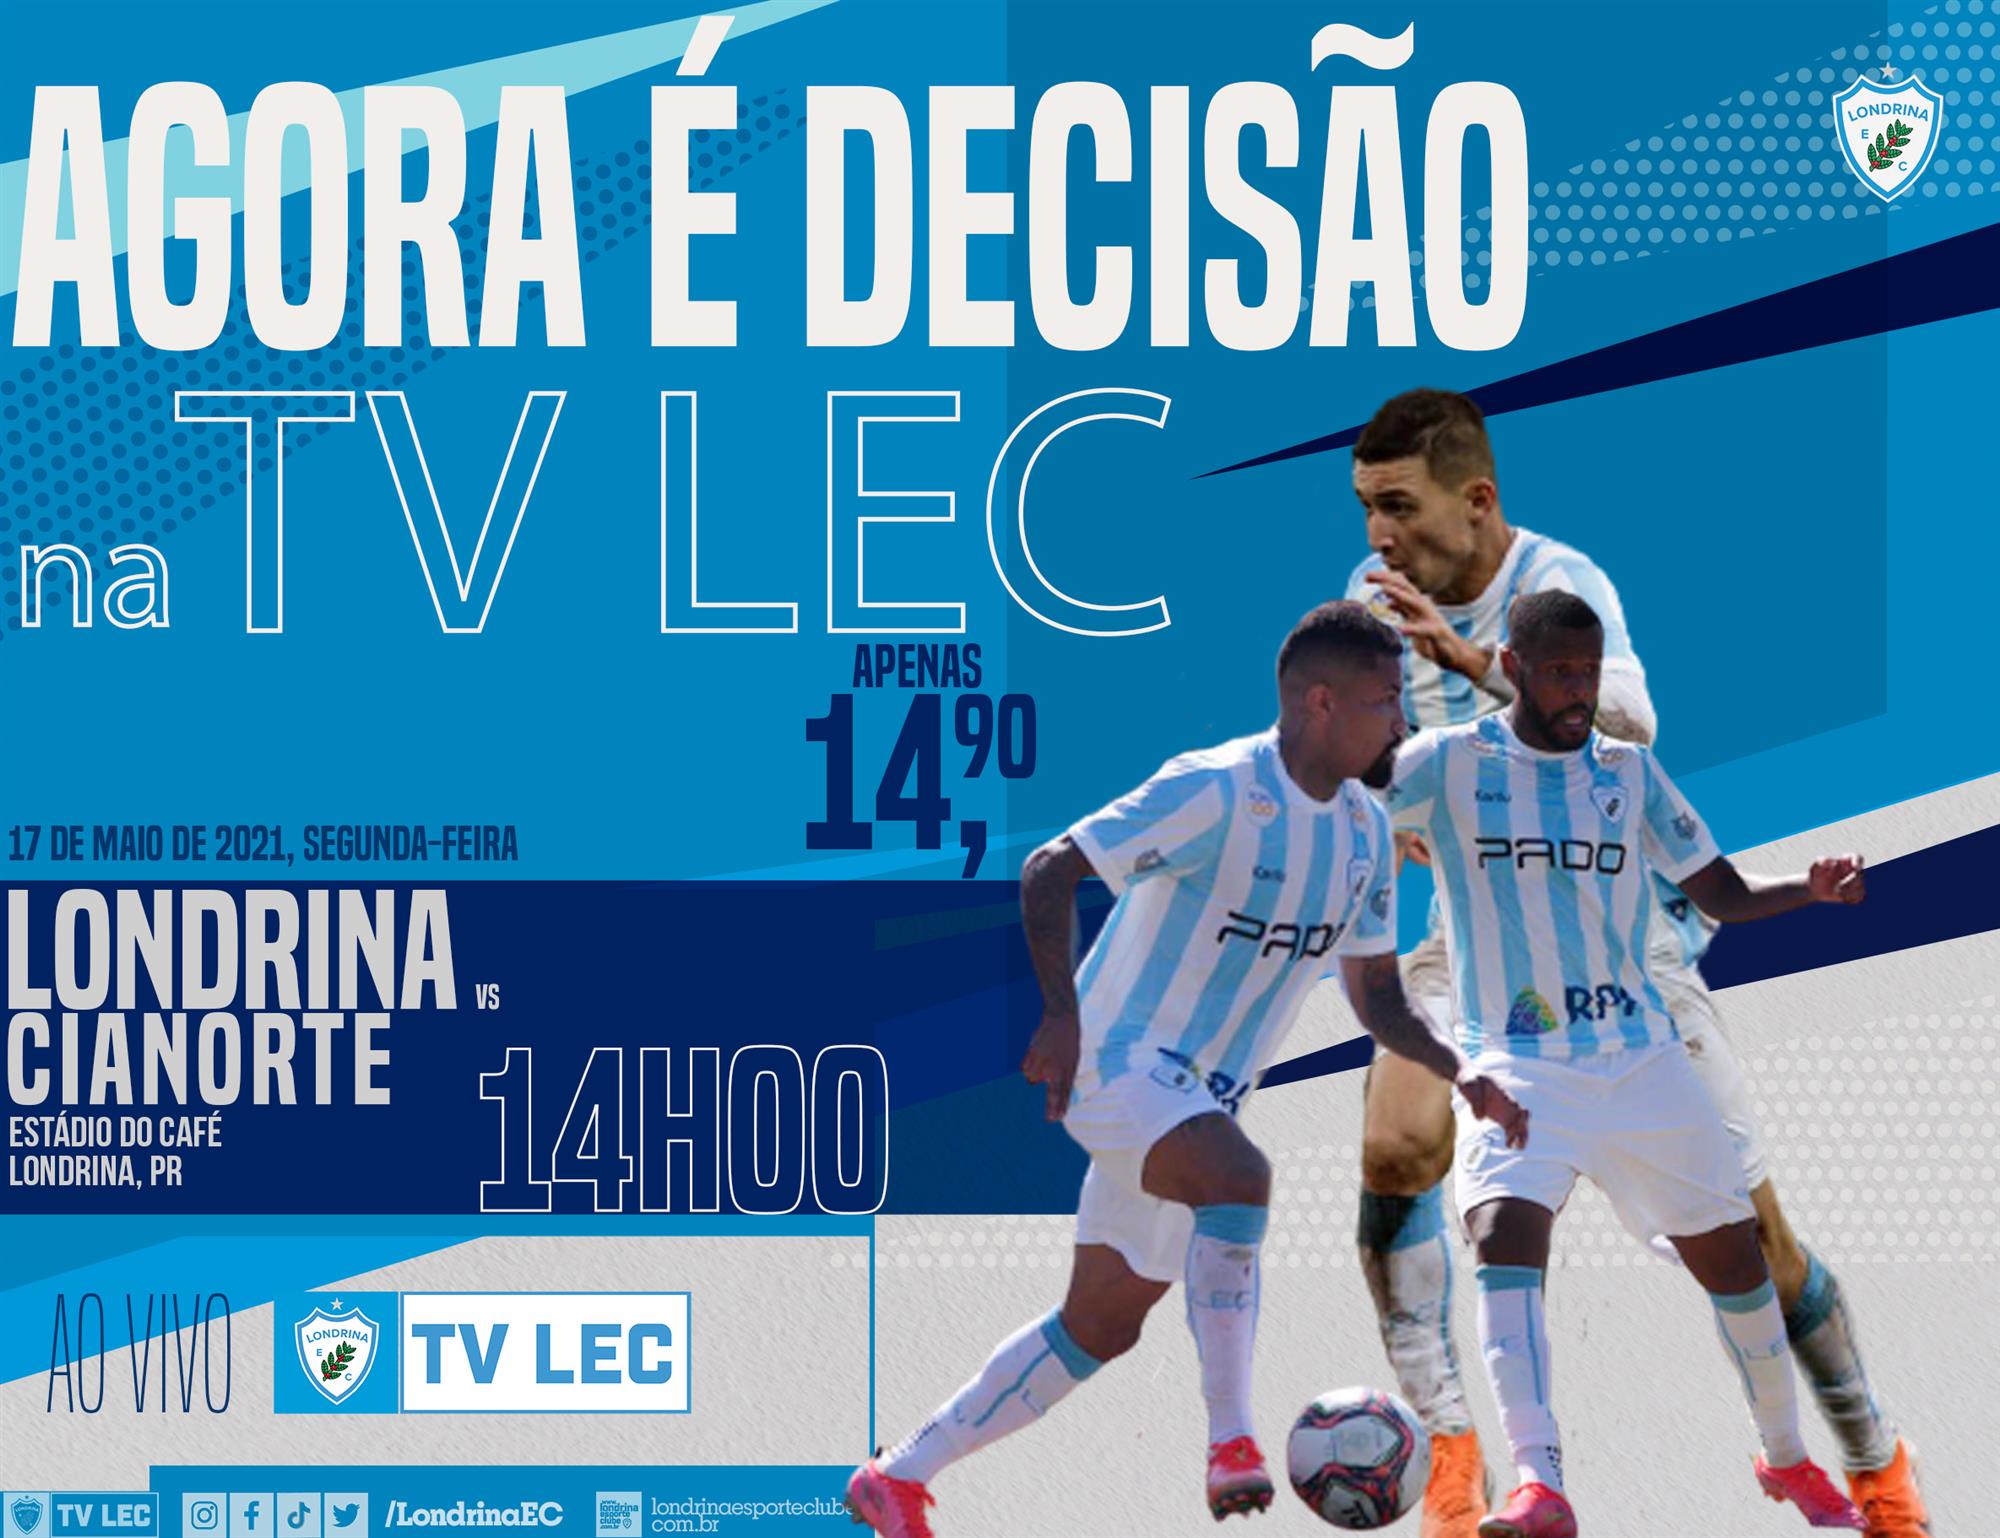 Assista ao jogo Londrina x Cianorte ao vivo pela TV LEC! Apenas R$ 14,90